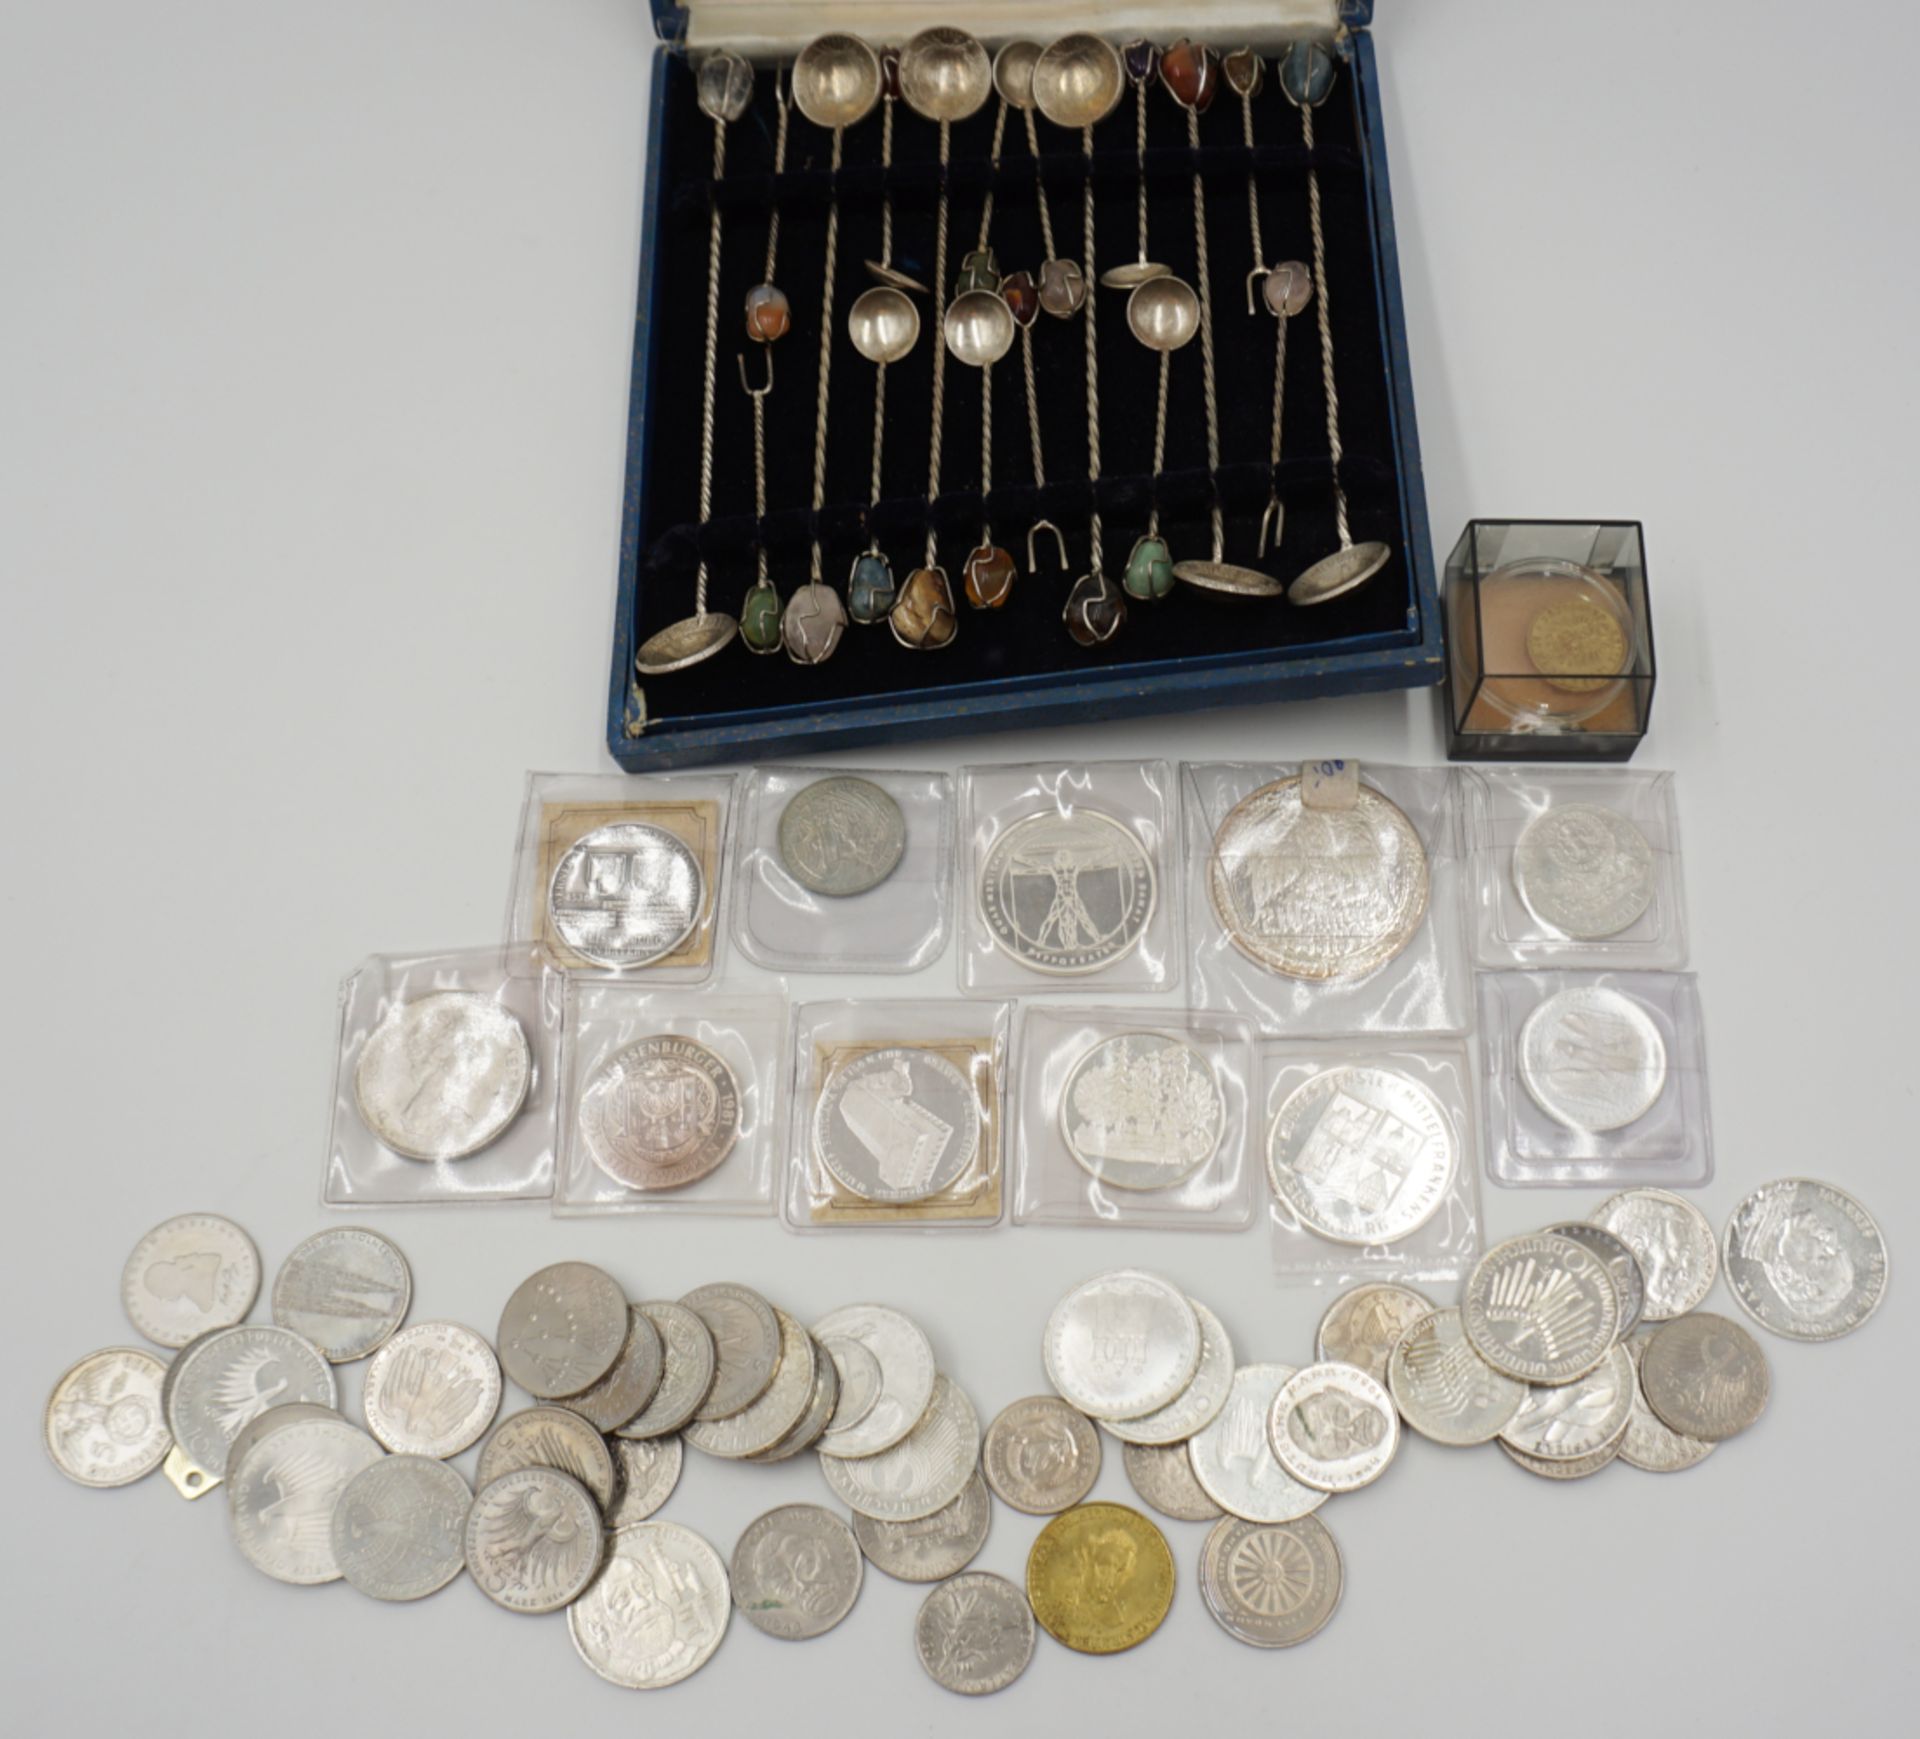 1 Konv. Münzen/Medaillen GG/Silber/Metall u.a., Deutsches Reich 20 DM, - Bild 2 aus 2